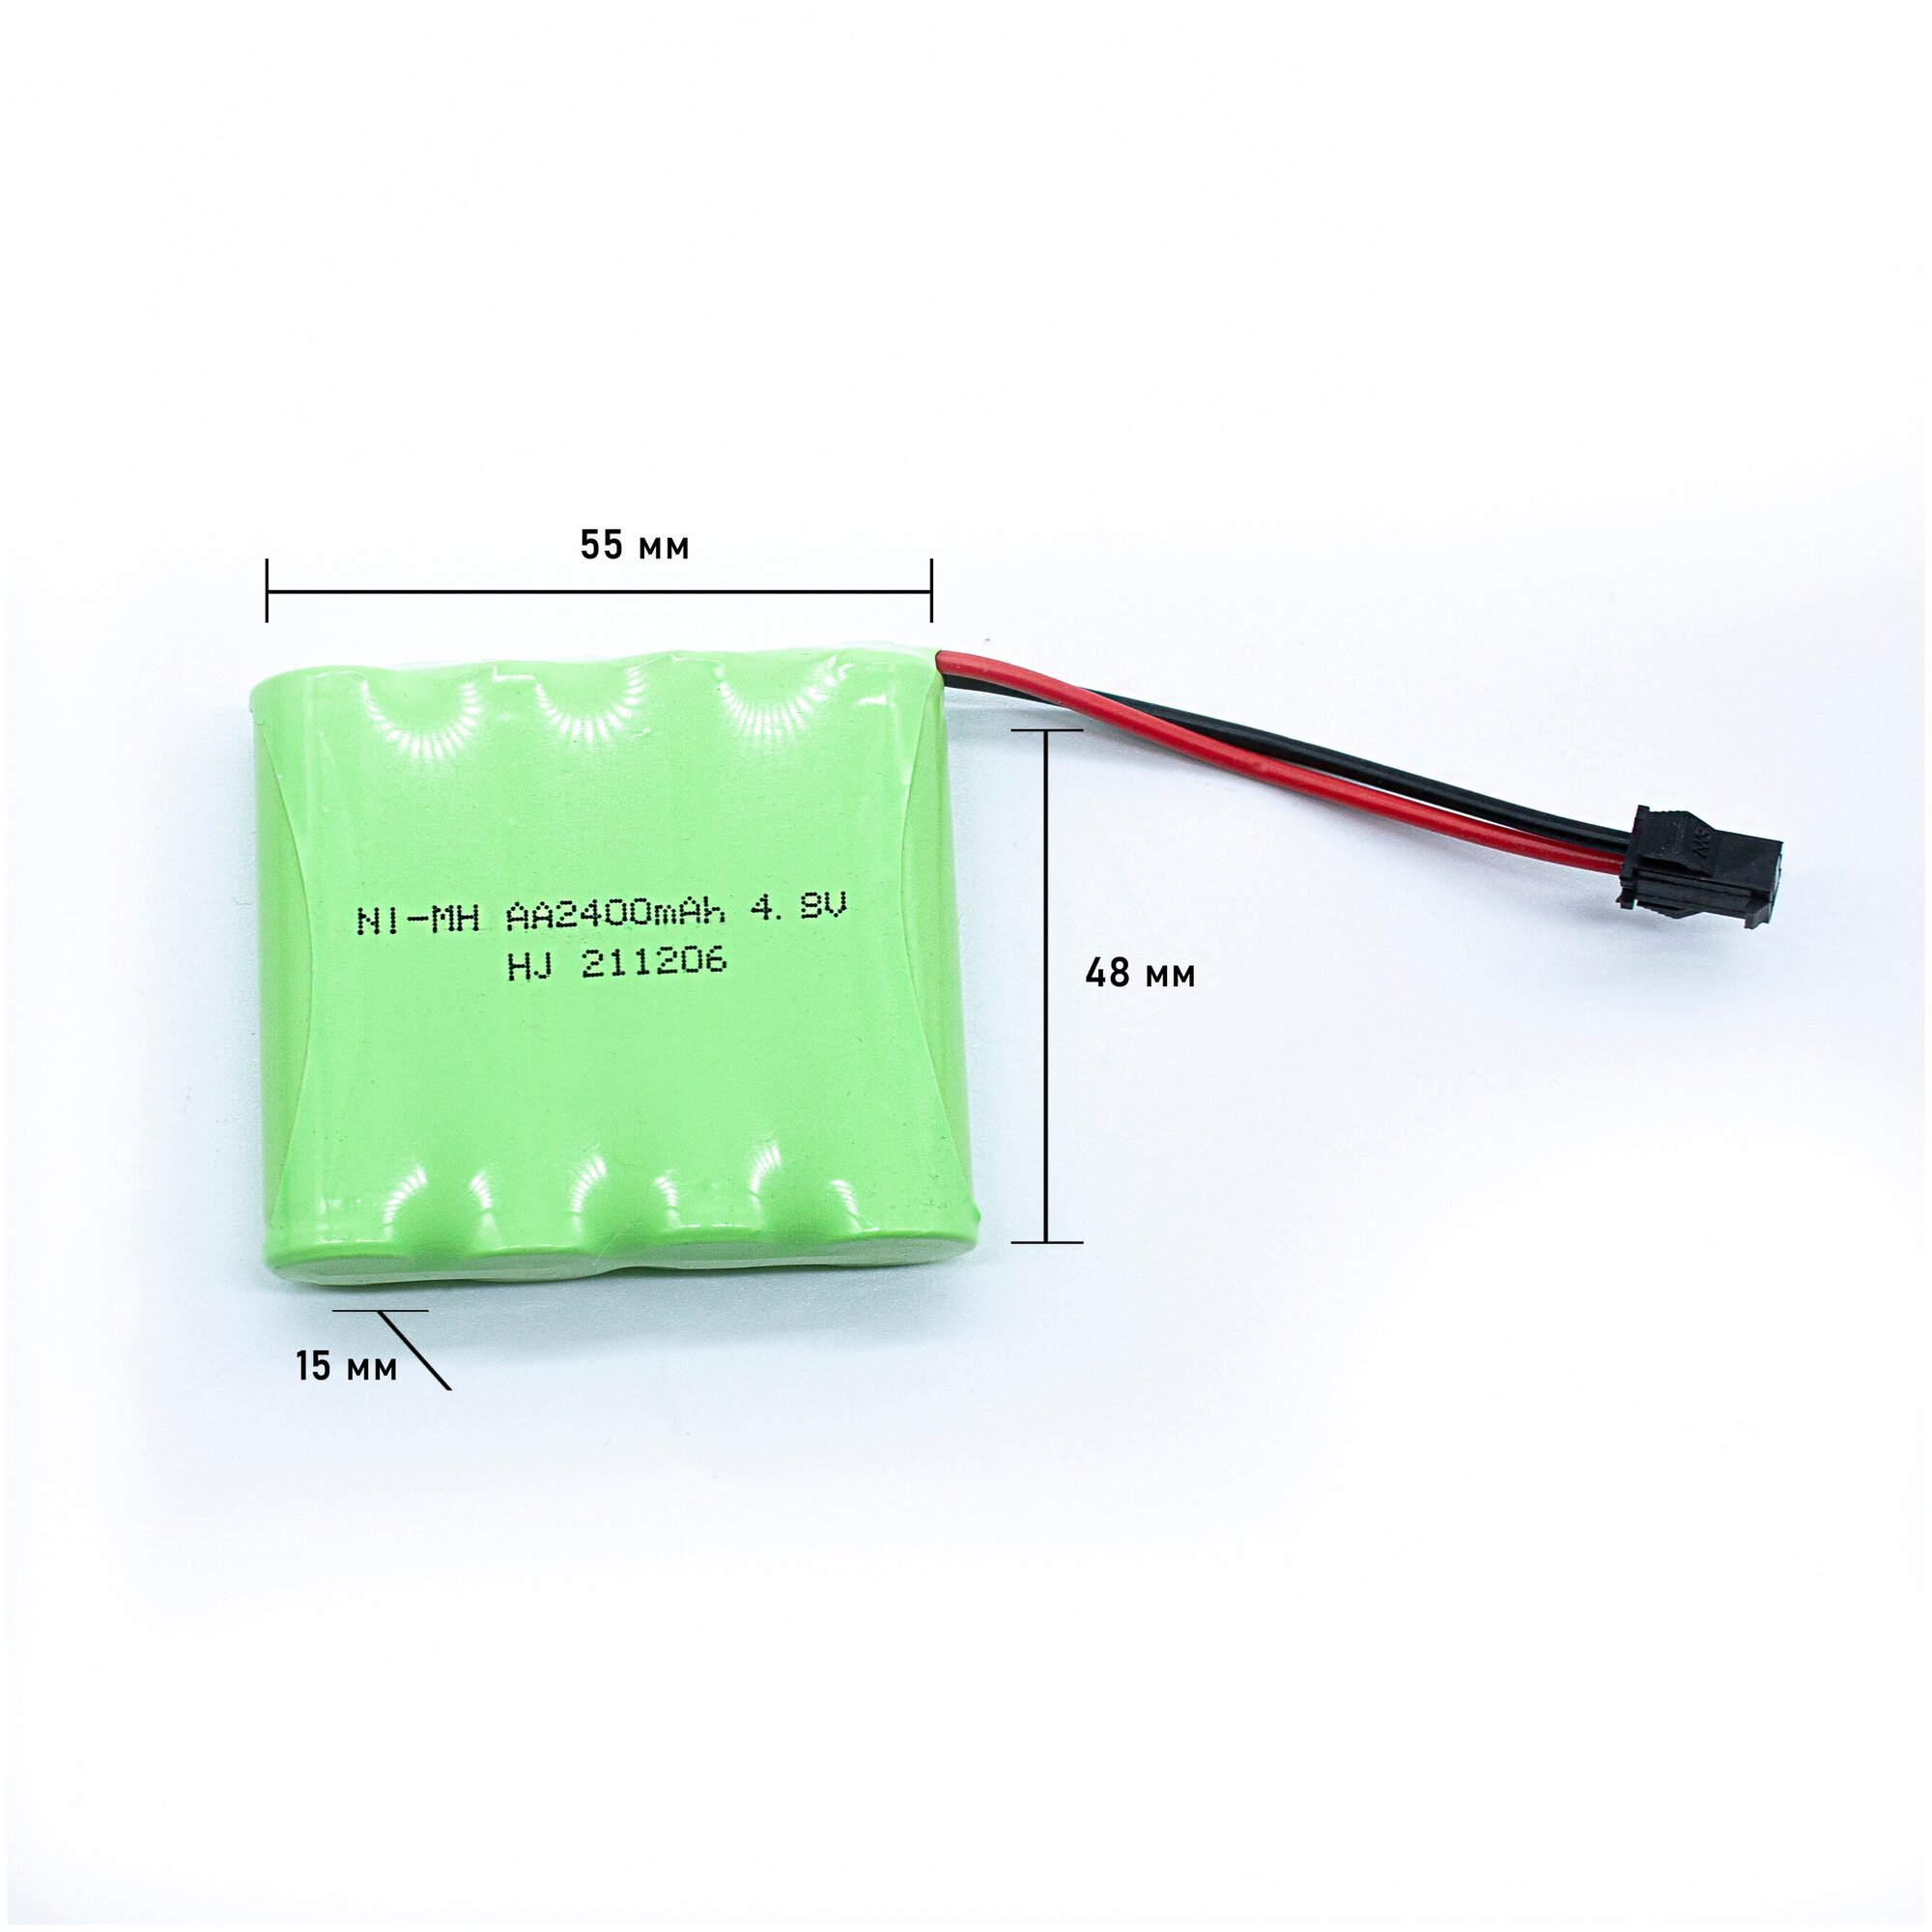 Аккумулятор NI-MH 4.8V 2400mAh (максимальная емкость) разъем YP зарядка в комплекте.